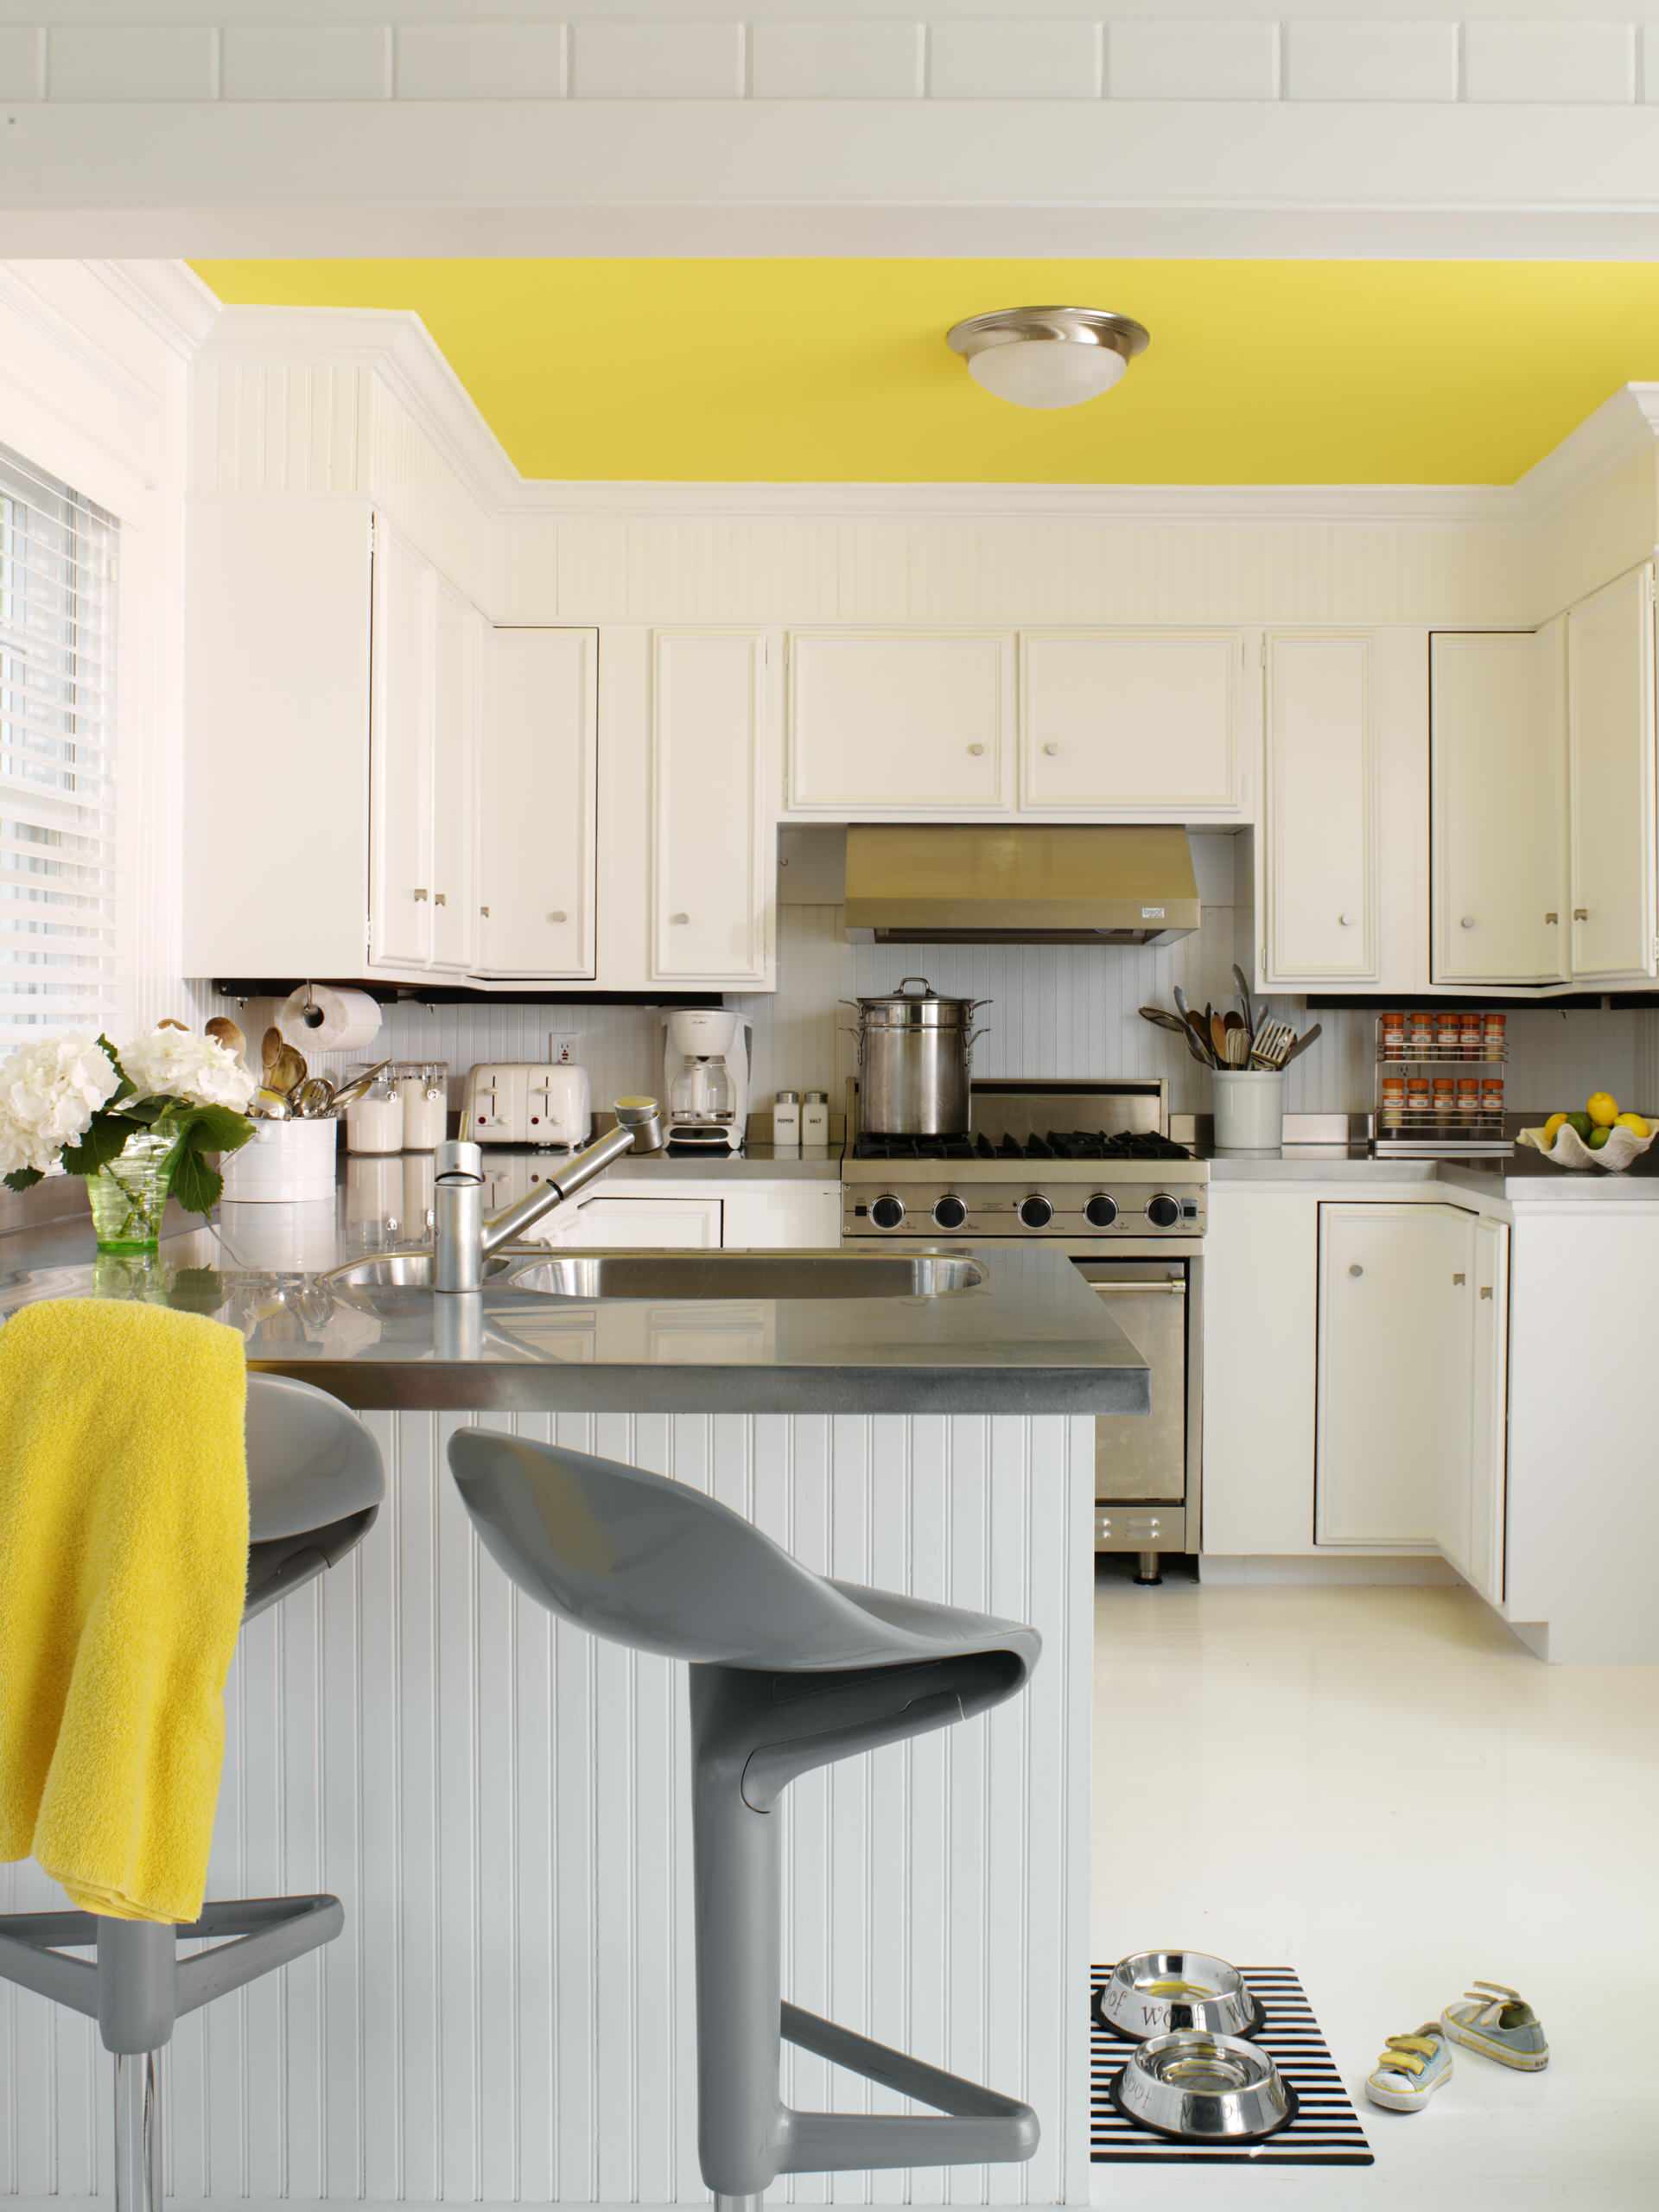 Đôi khi, sự phối hợp màu sắc không nhất thiết chỉ đến từ nội thất cơ bản. Chẳng hạn như phòng bếp màu xám chủ đạo này, bạn chỉ cần sơn trần nhà và vắt một chiếc khăn màu vàng lên ghế thôi là cũng đủ tạo nên điểm nhấn.